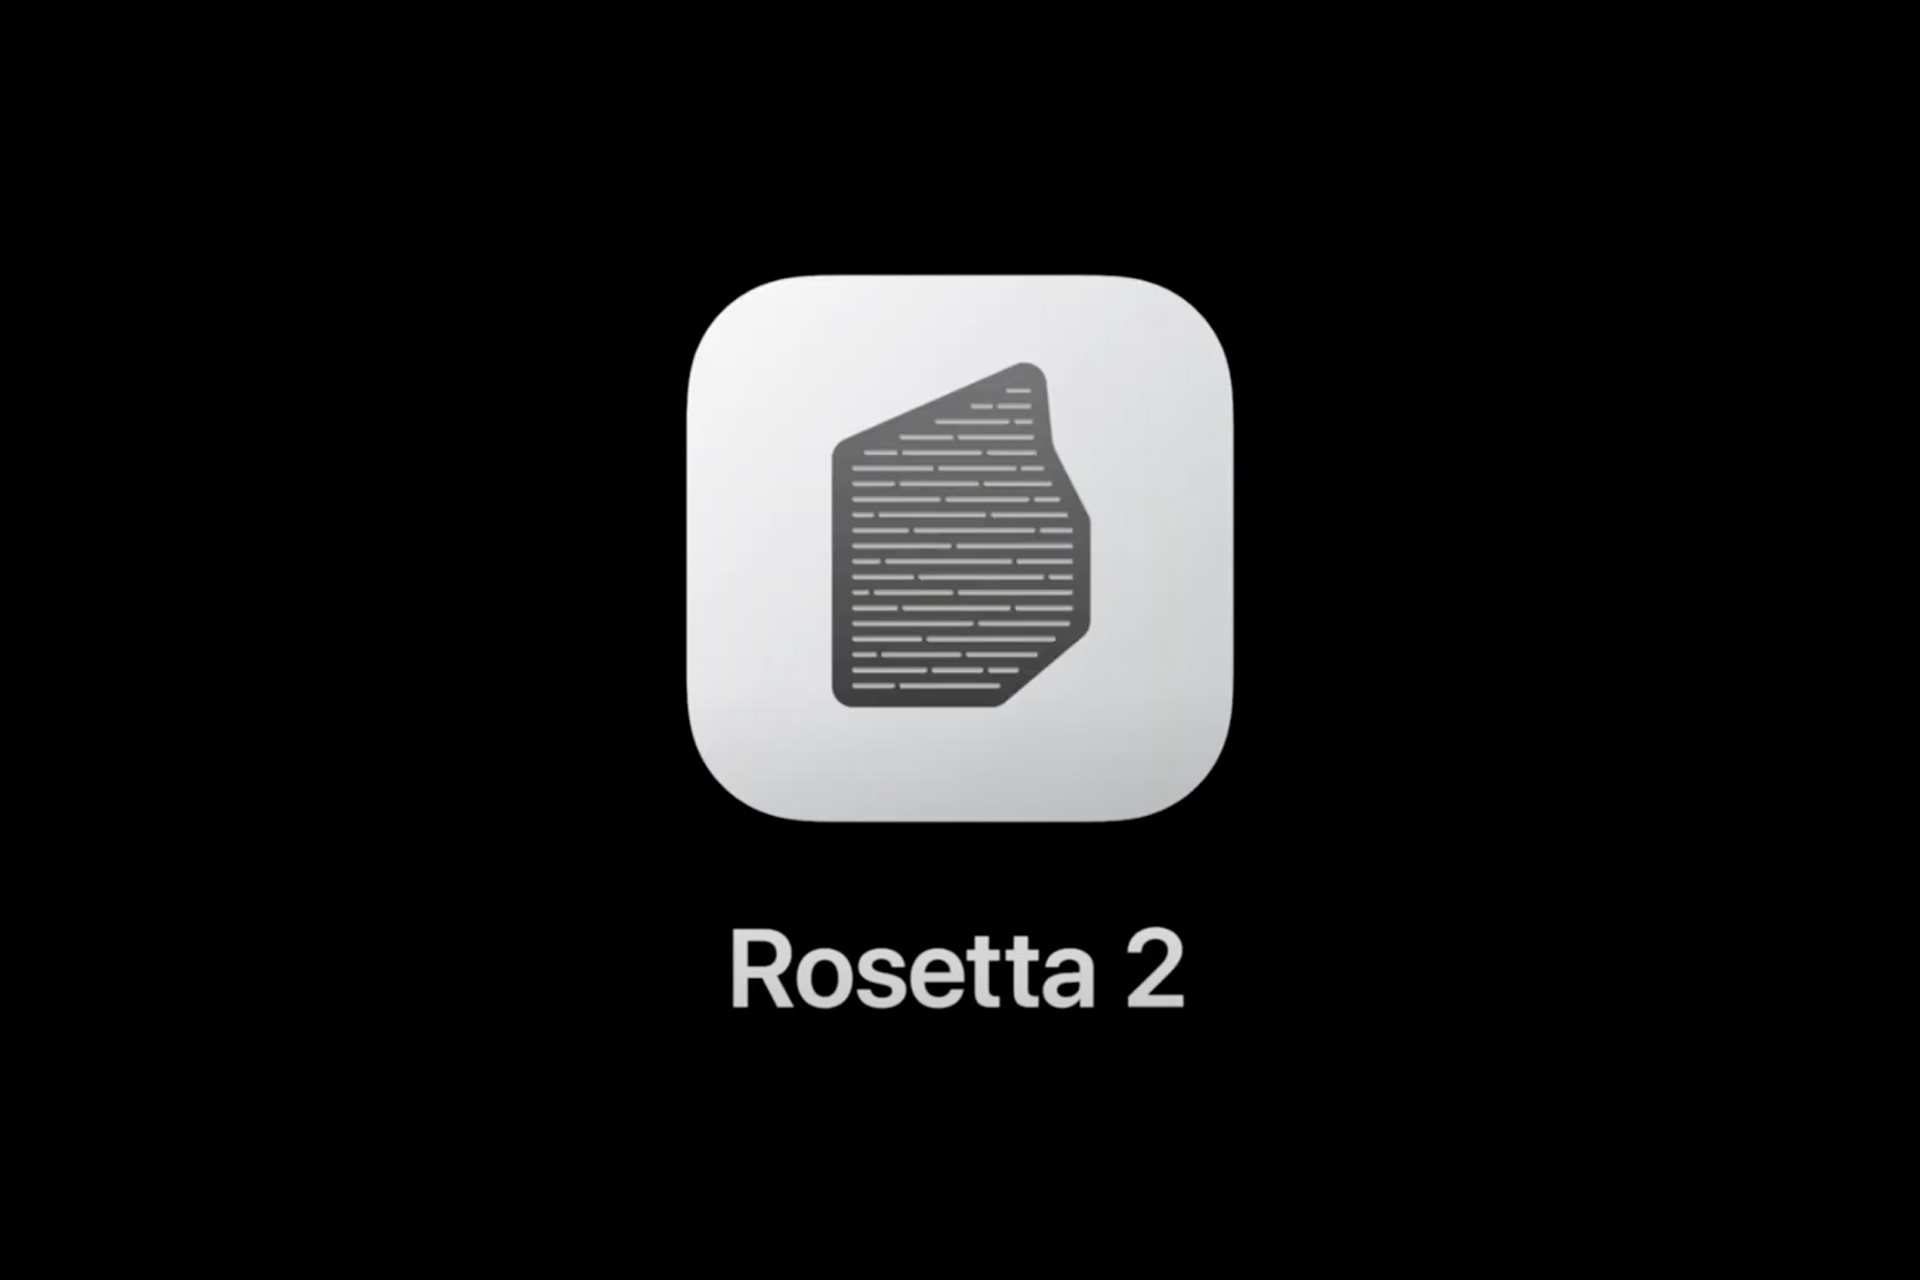 لوگو روزتا 2 اپل / Apple Rosetta 2